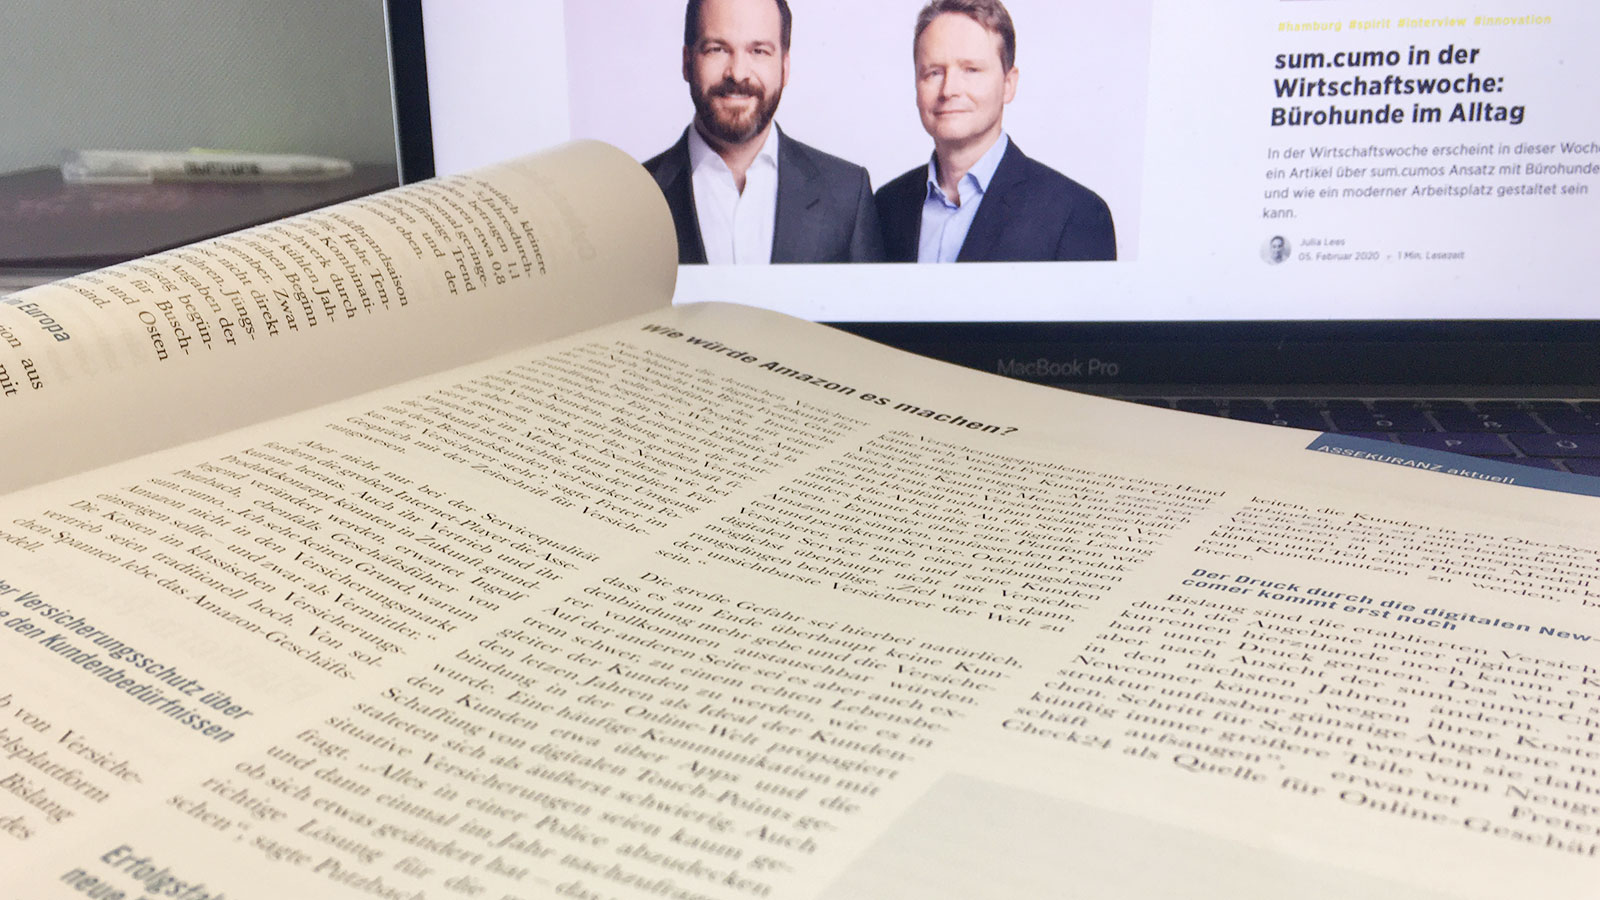 Our managing directors in an interview with the Zeitschrift für Versicherungswesen